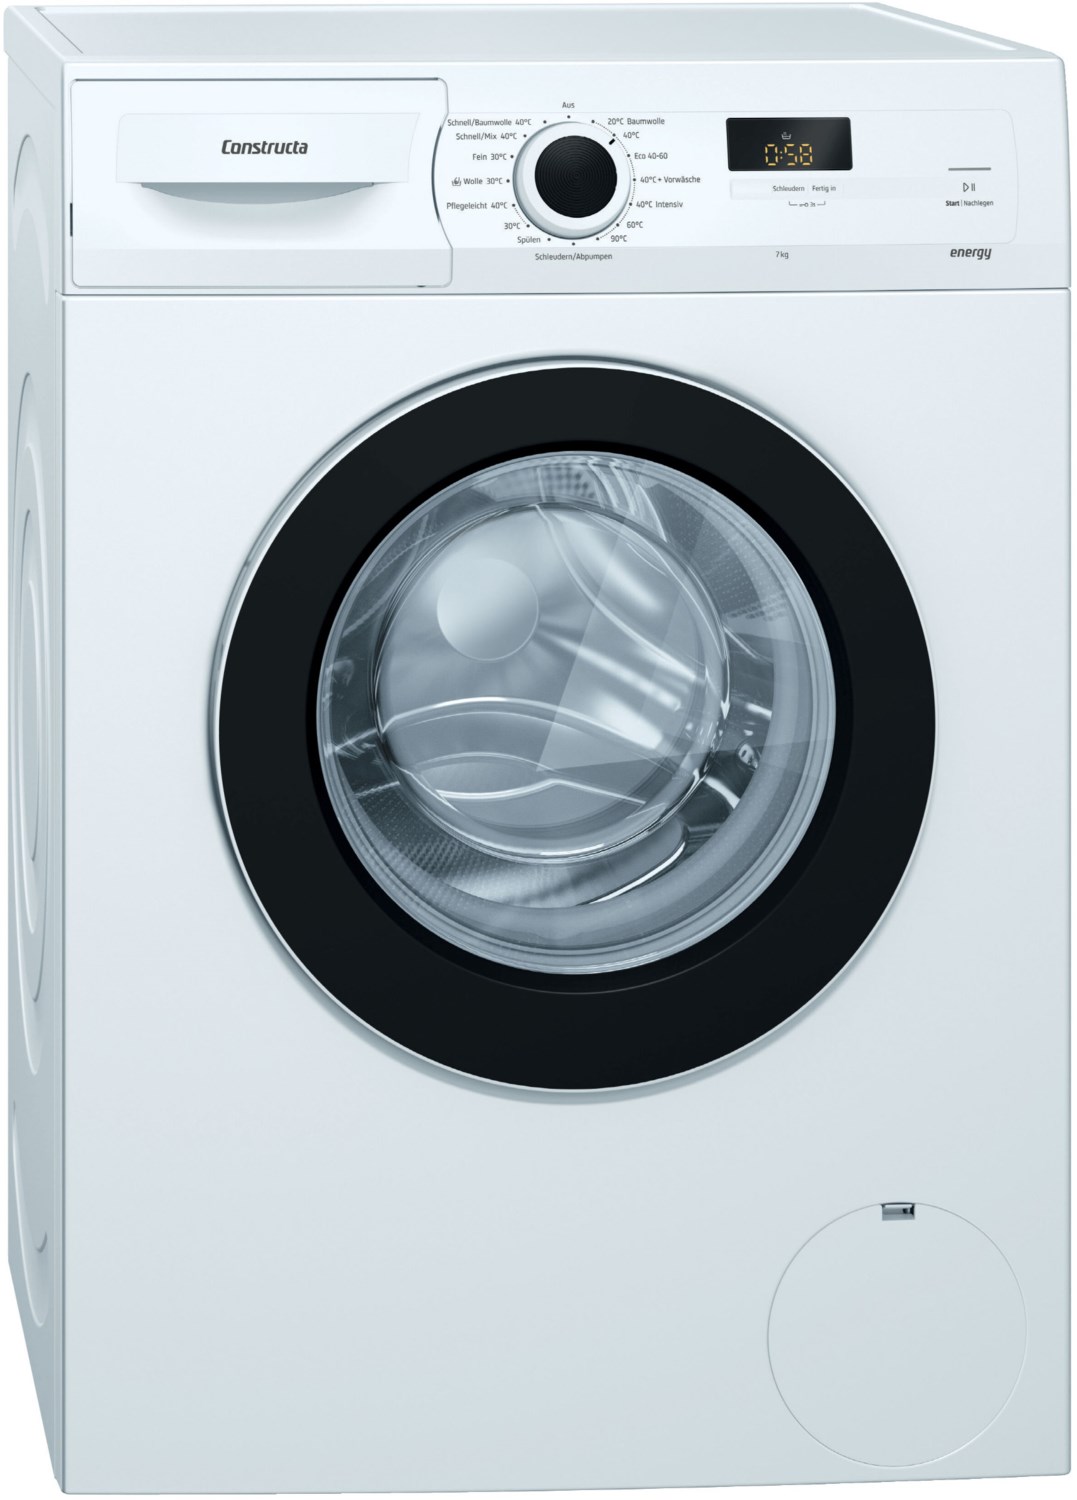 CWF14J01 Stand-Waschmaschine-Frontlader weiß / D